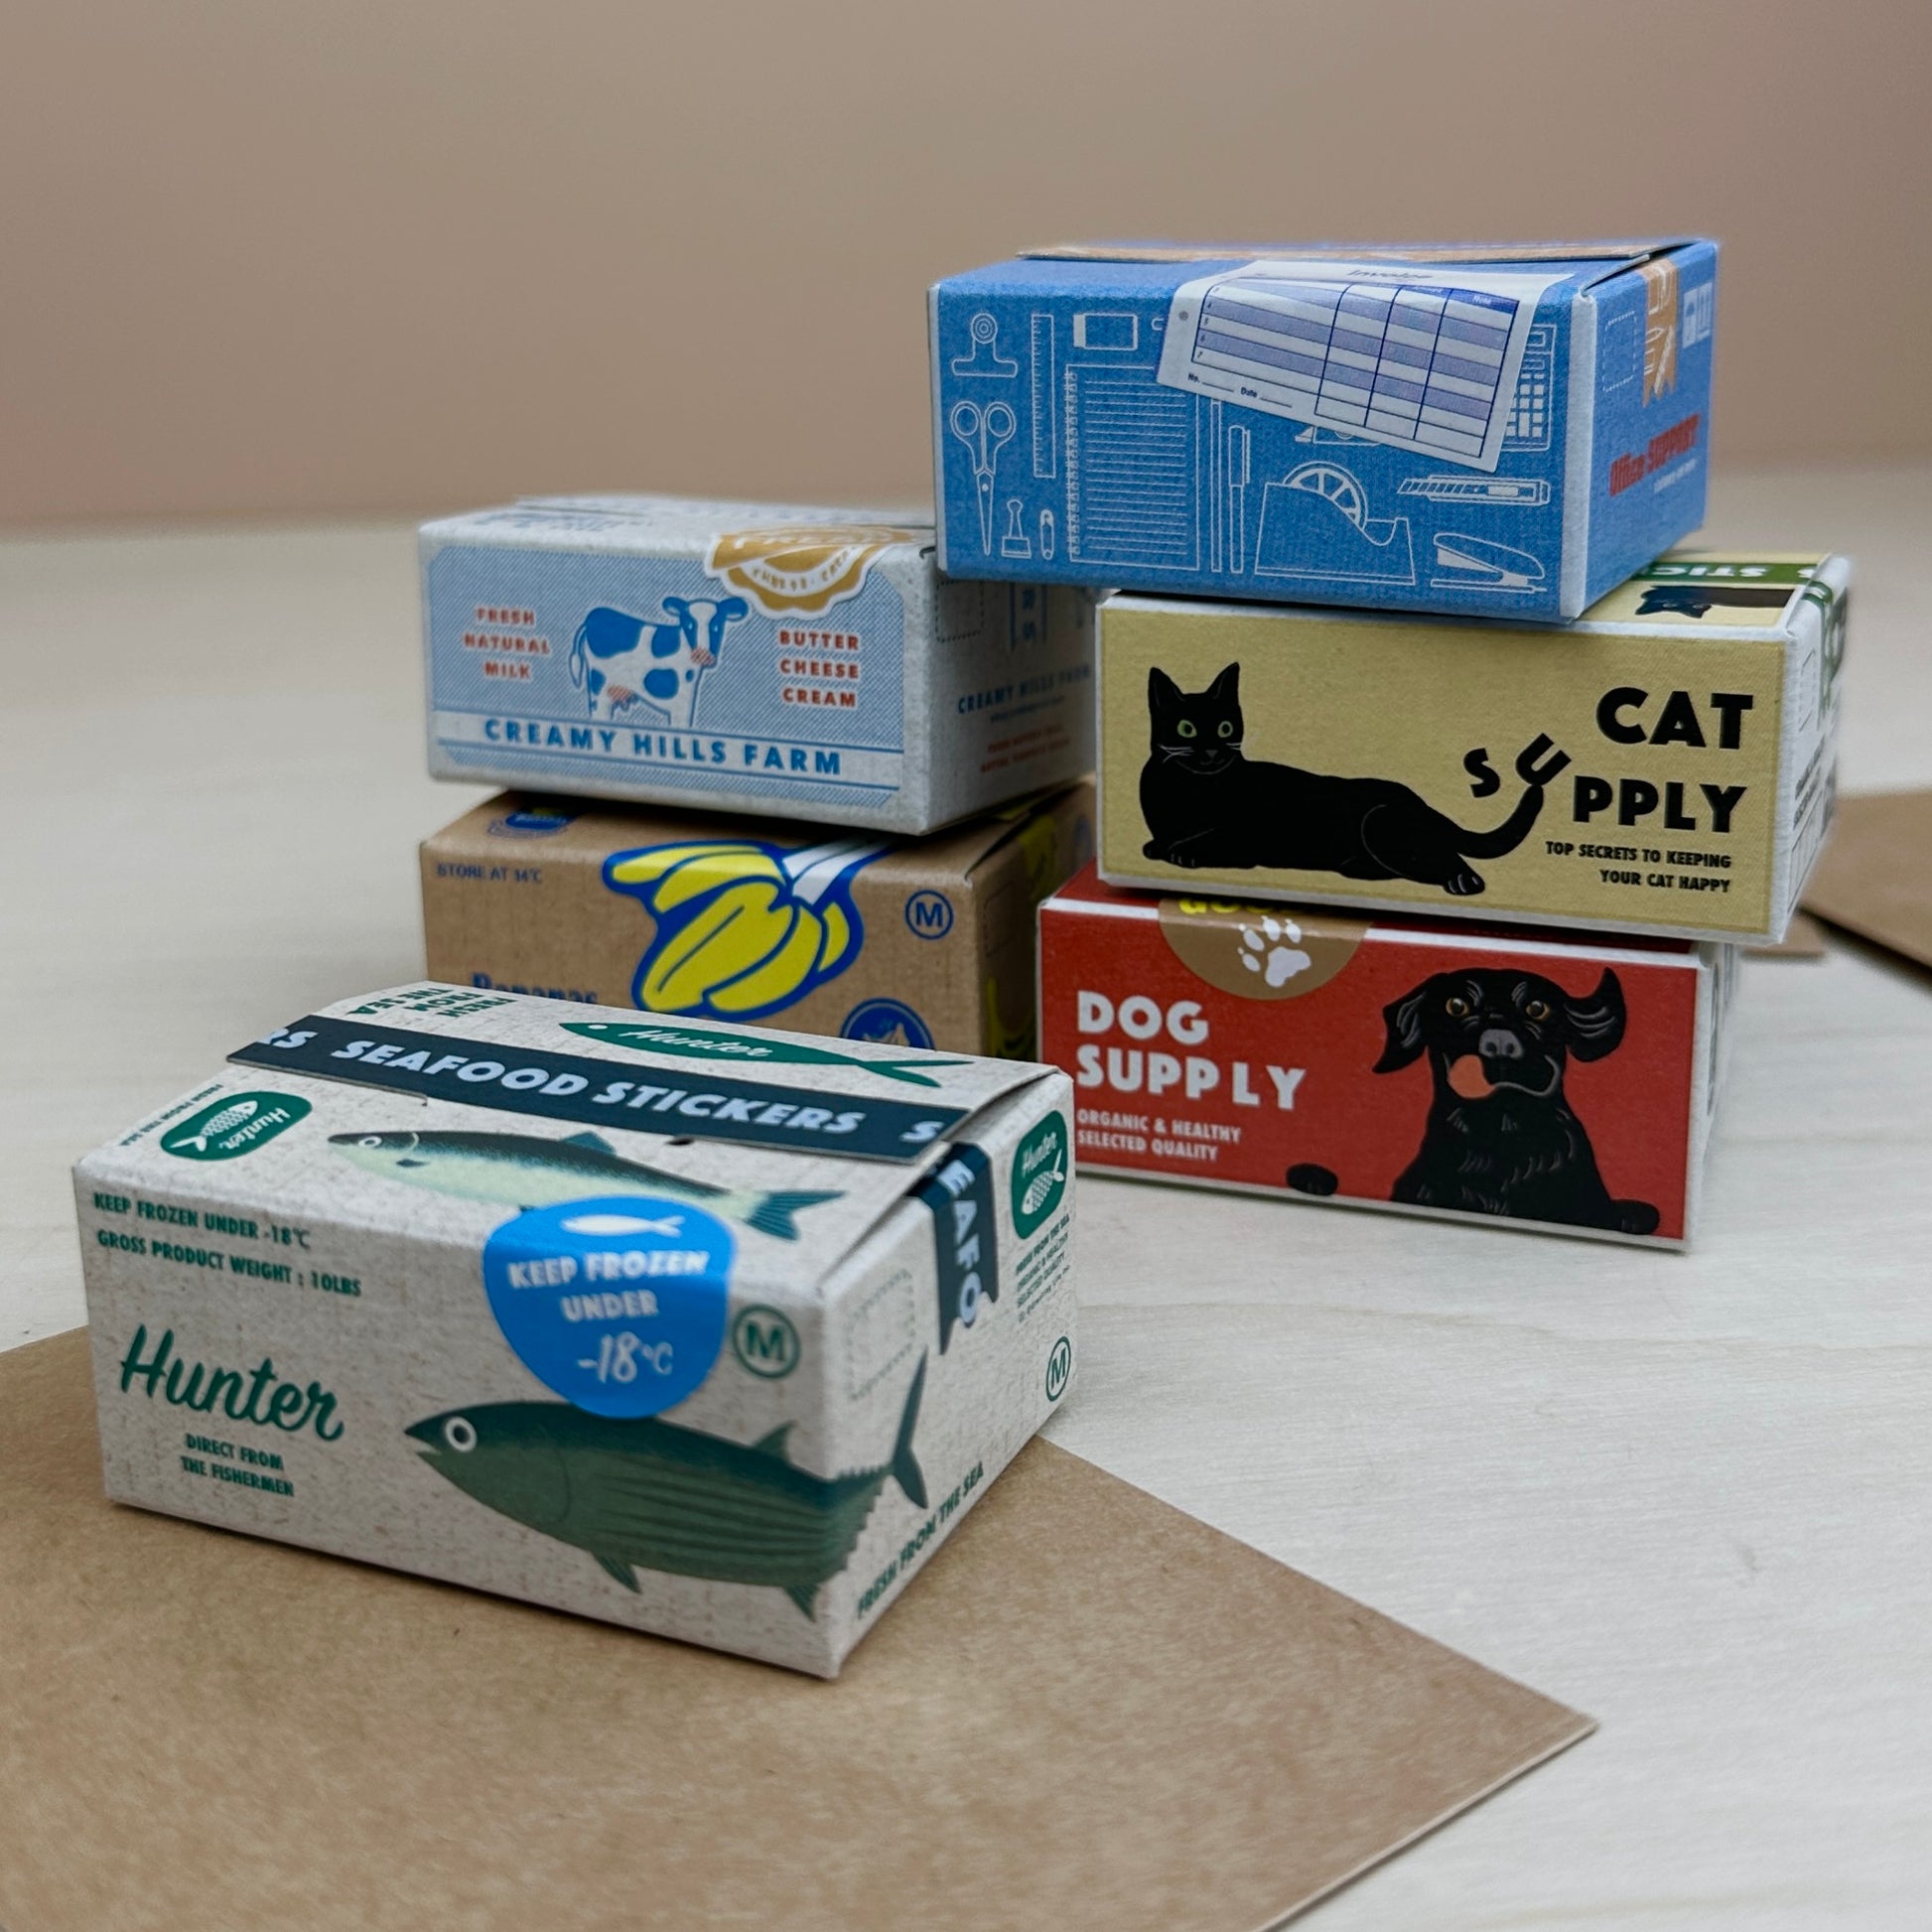 Miniature Shipping Box Flake Sticker Set - Fish – Saiko Stationery